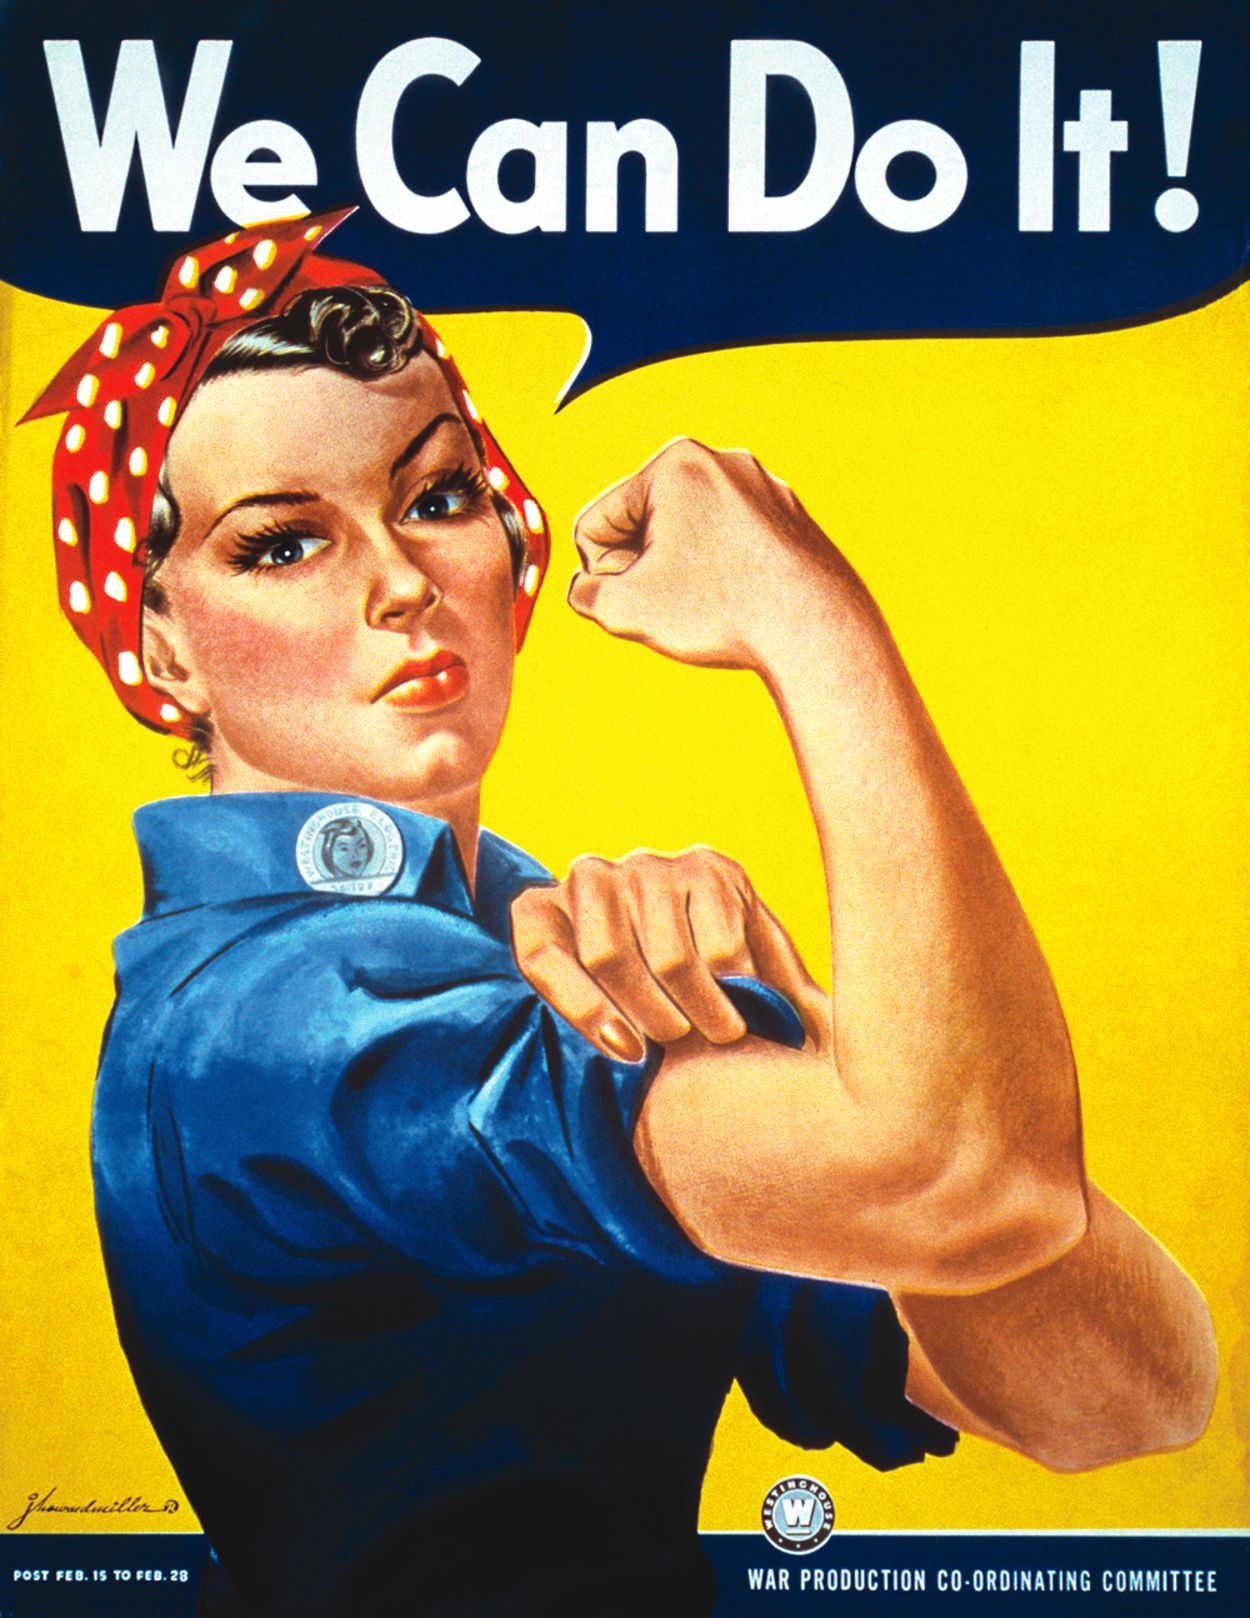 La historia detrás del mítico cartel 'We Can Do It!', convertido en un icono feminista